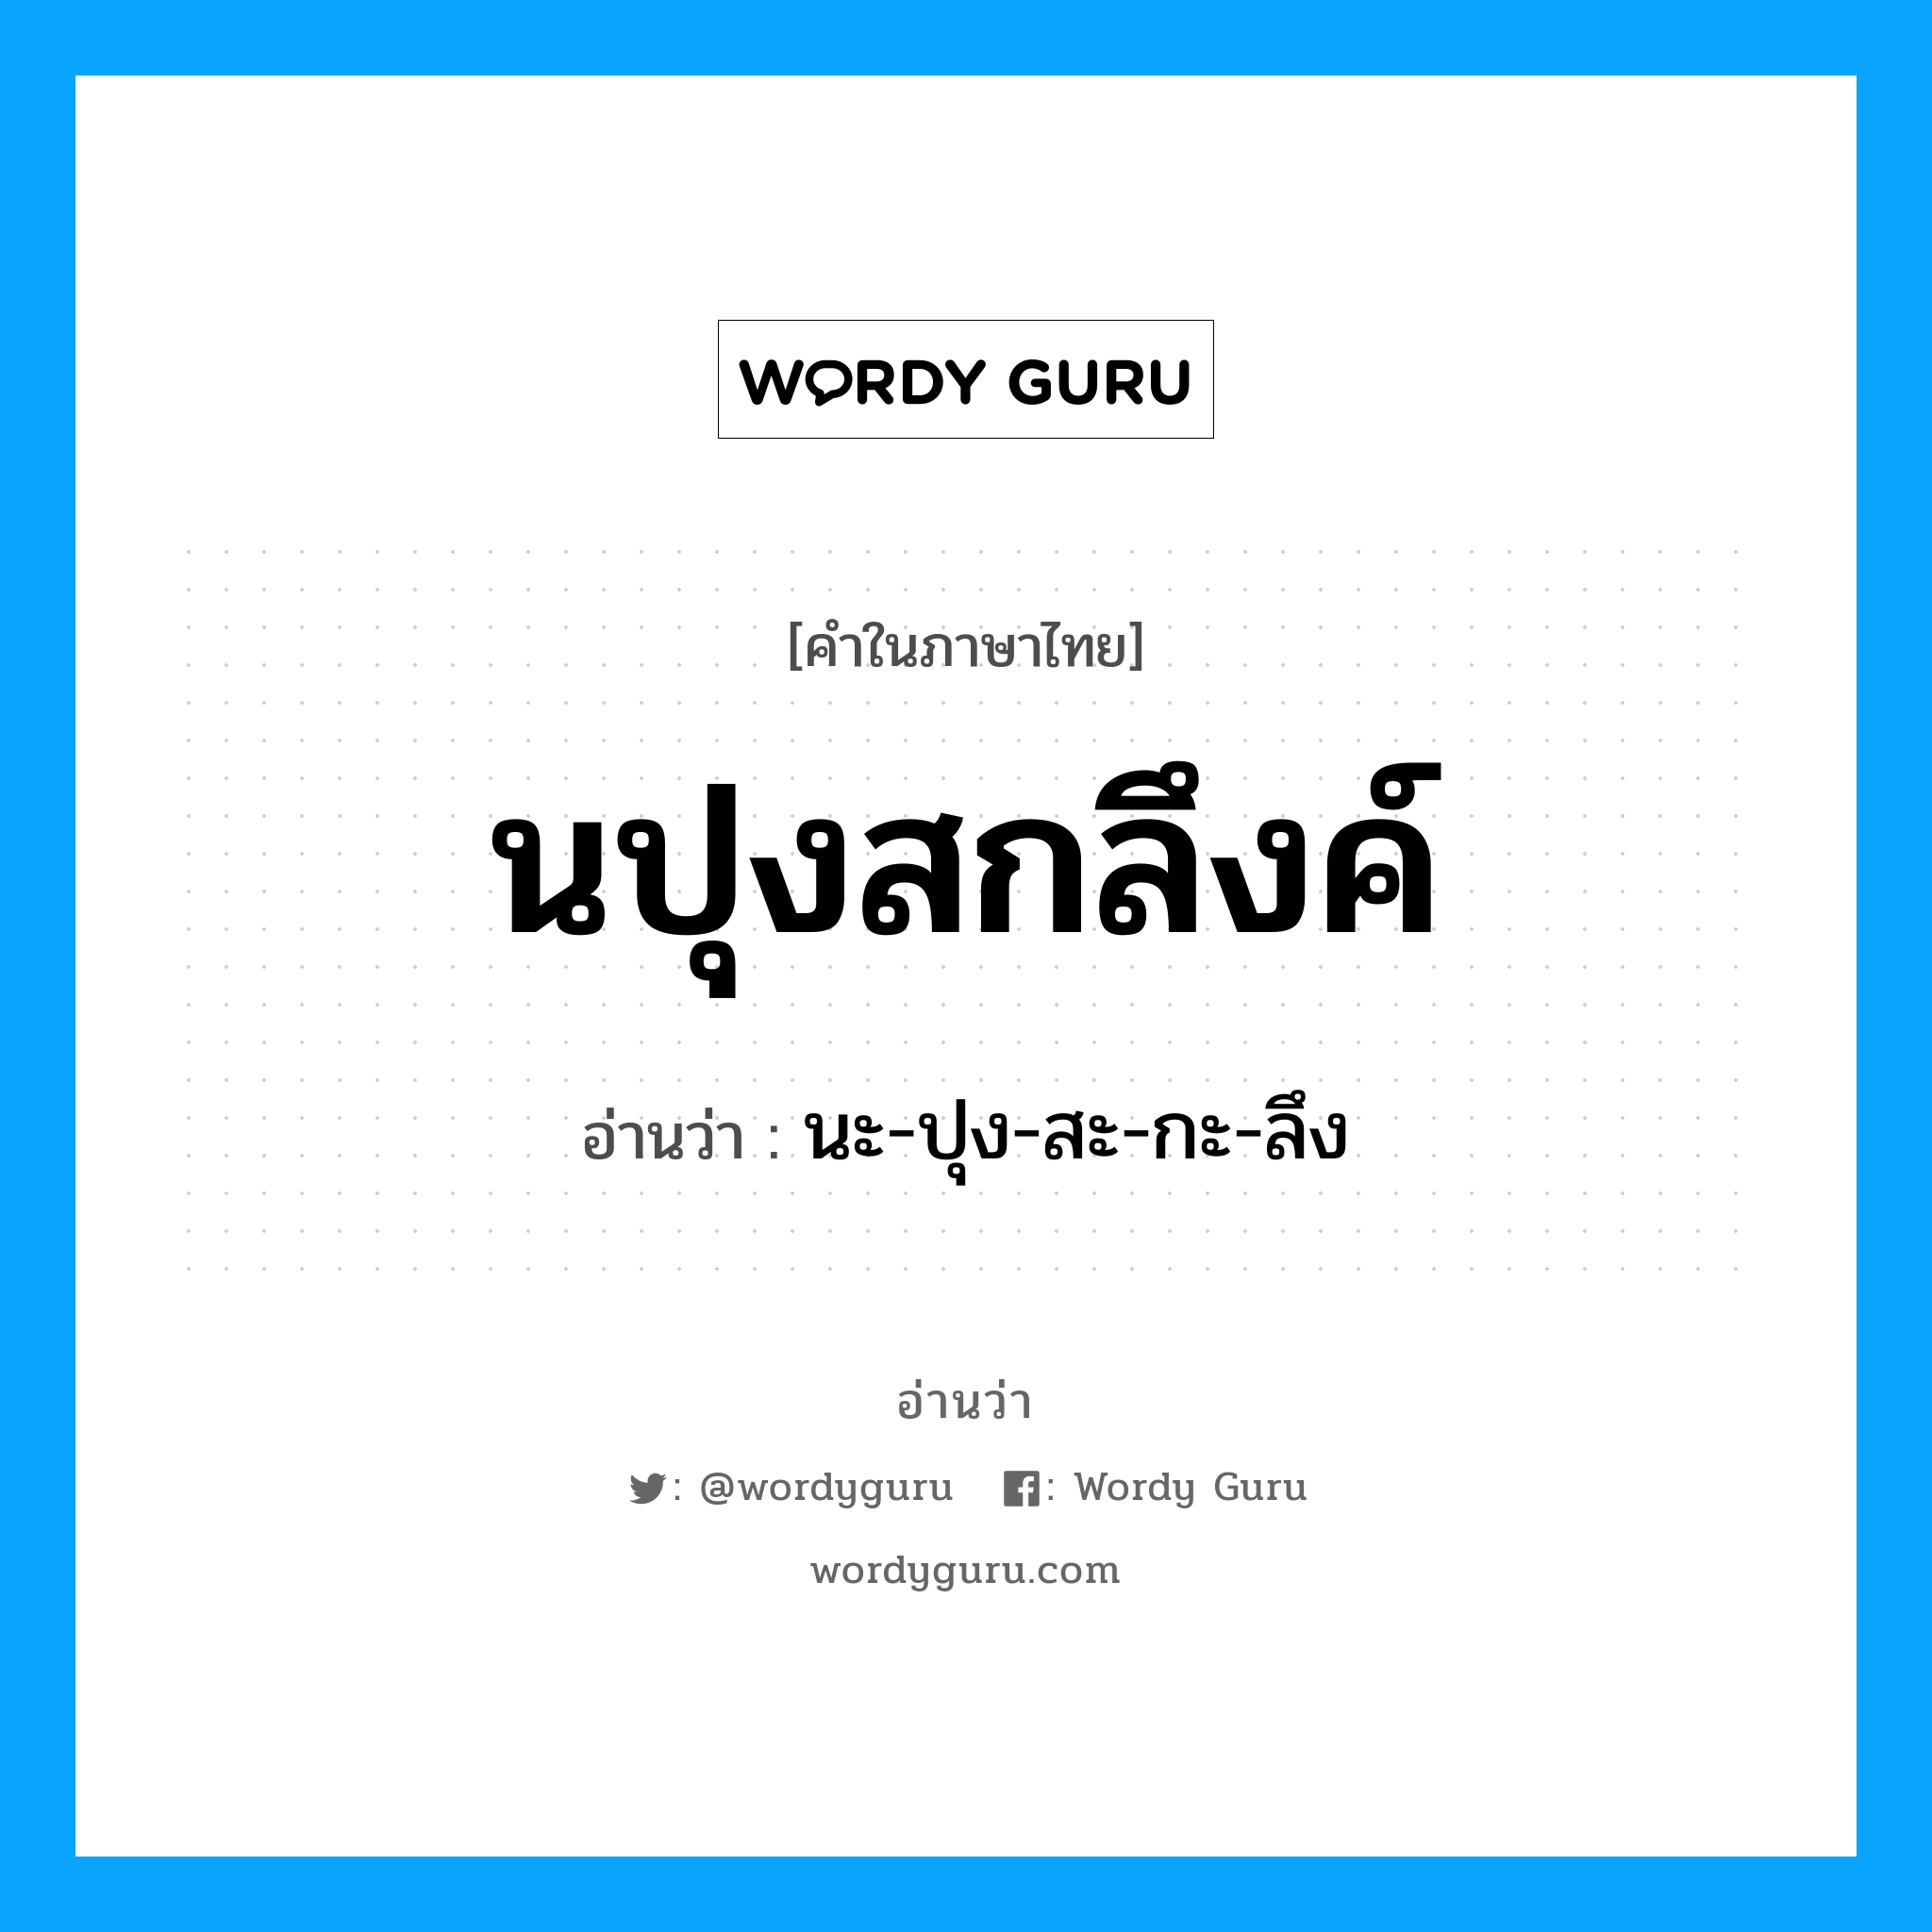 นะ-ปุง-สะ-กะ-ลึง เป็นคำอ่านของคำไหน?, คำในภาษาไทย นะ-ปุง-สะ-กะ-ลึง อ่านว่า นปุงสกลึงค์